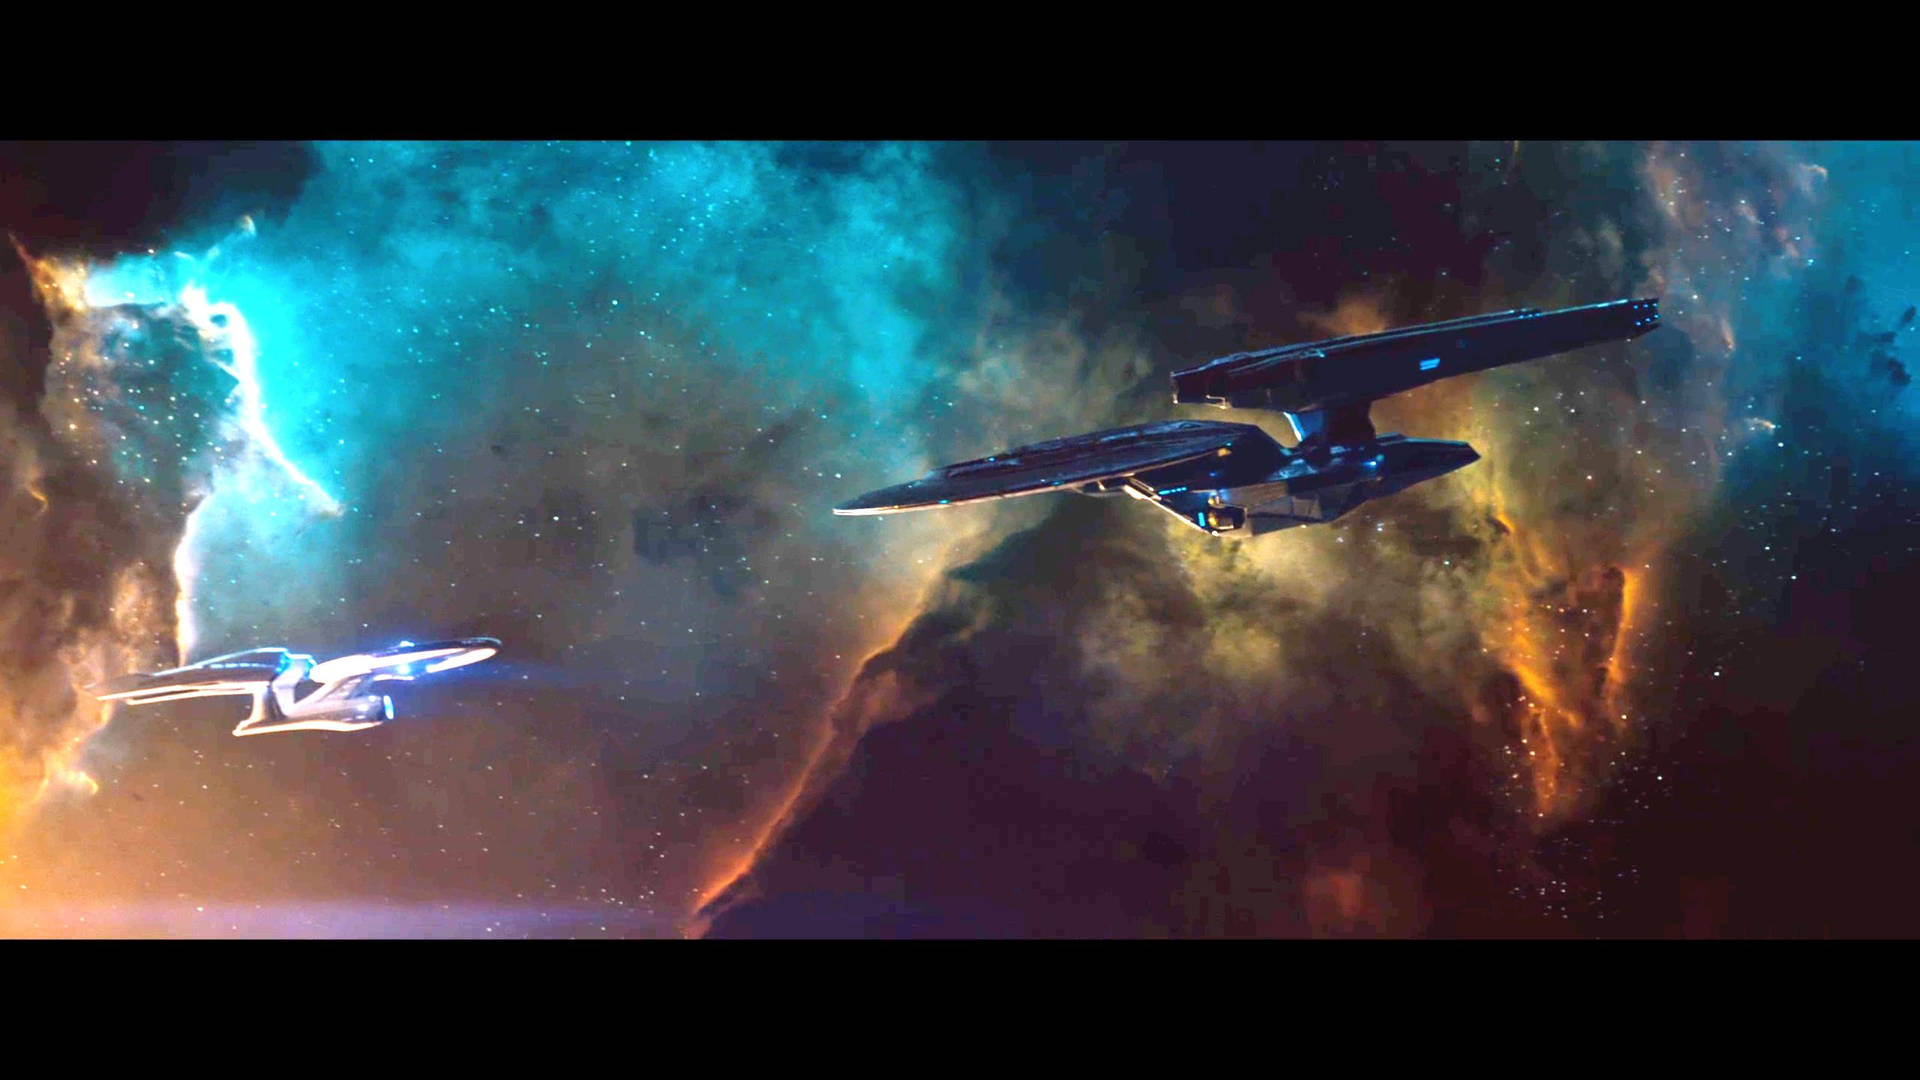 38 Star Trek Wallpapers & Backgrounds